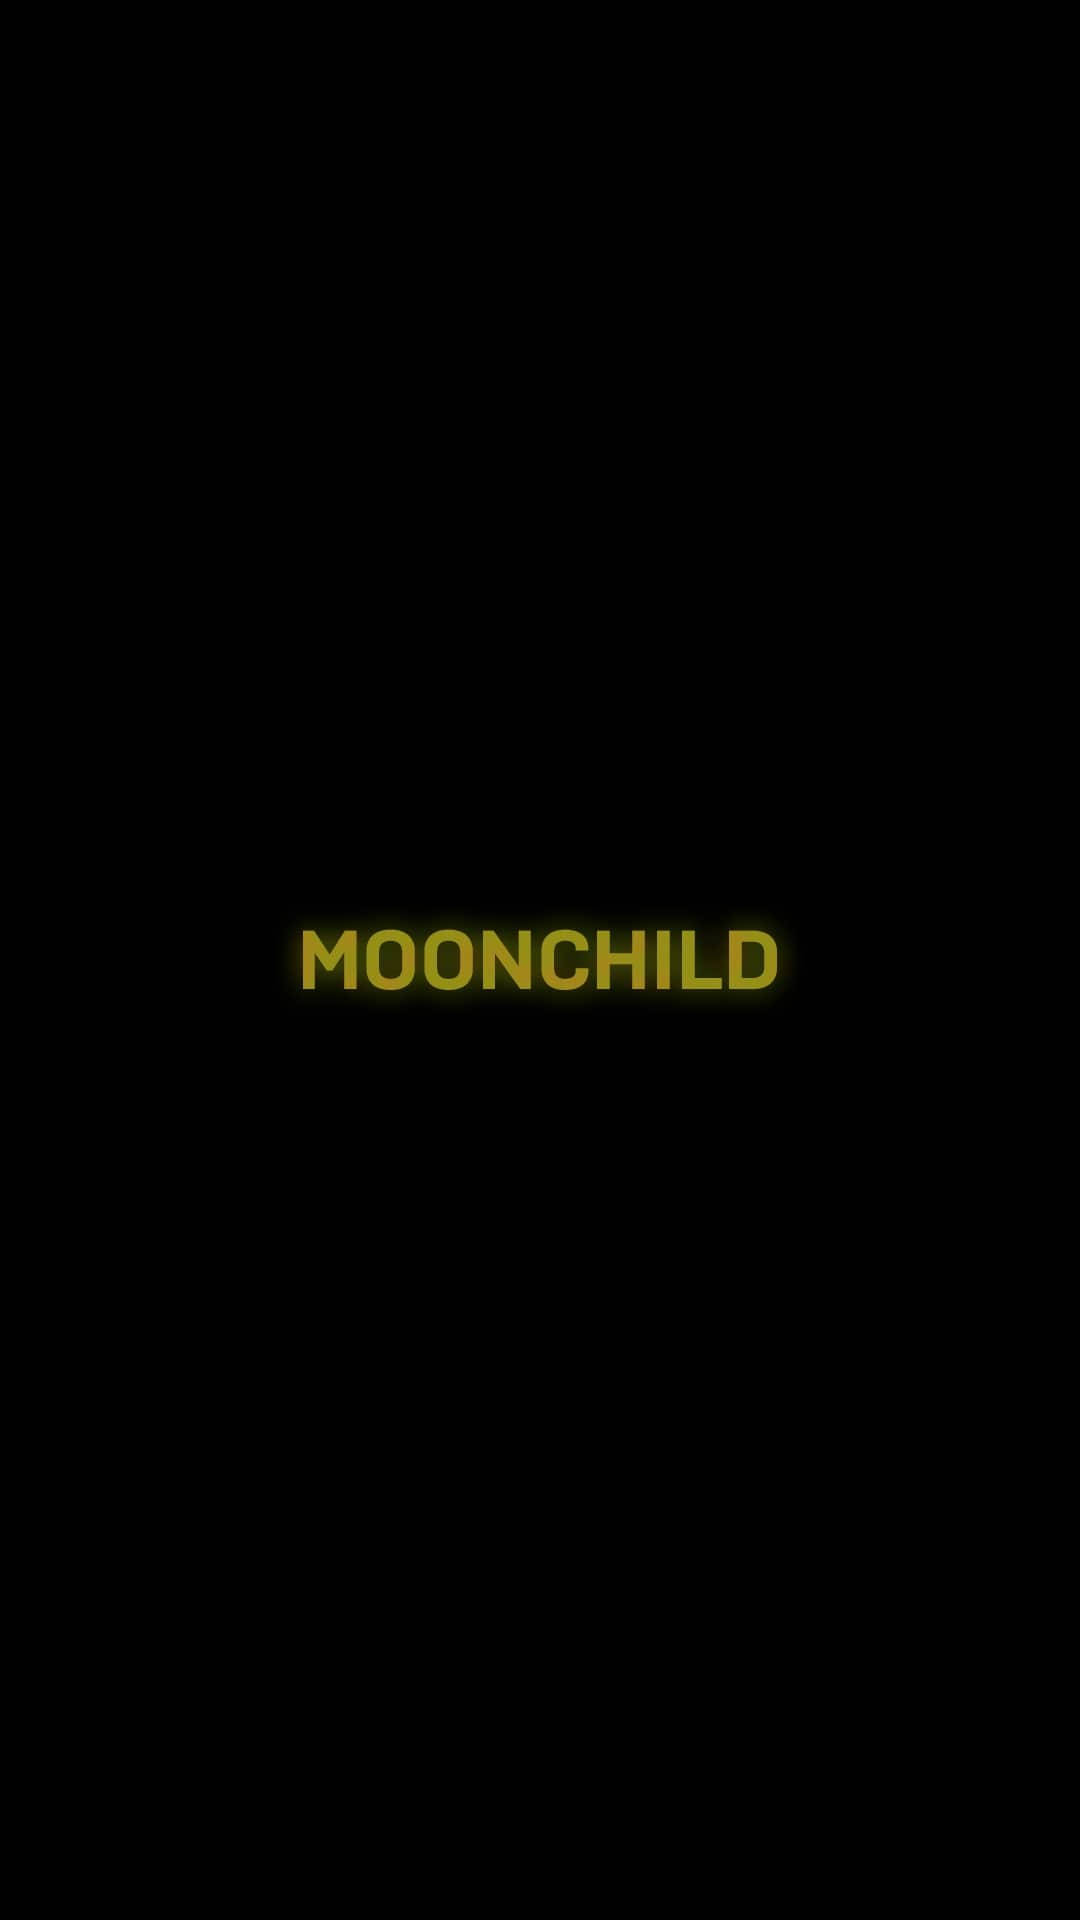 Moonchild Bts Black Aesthetic Background